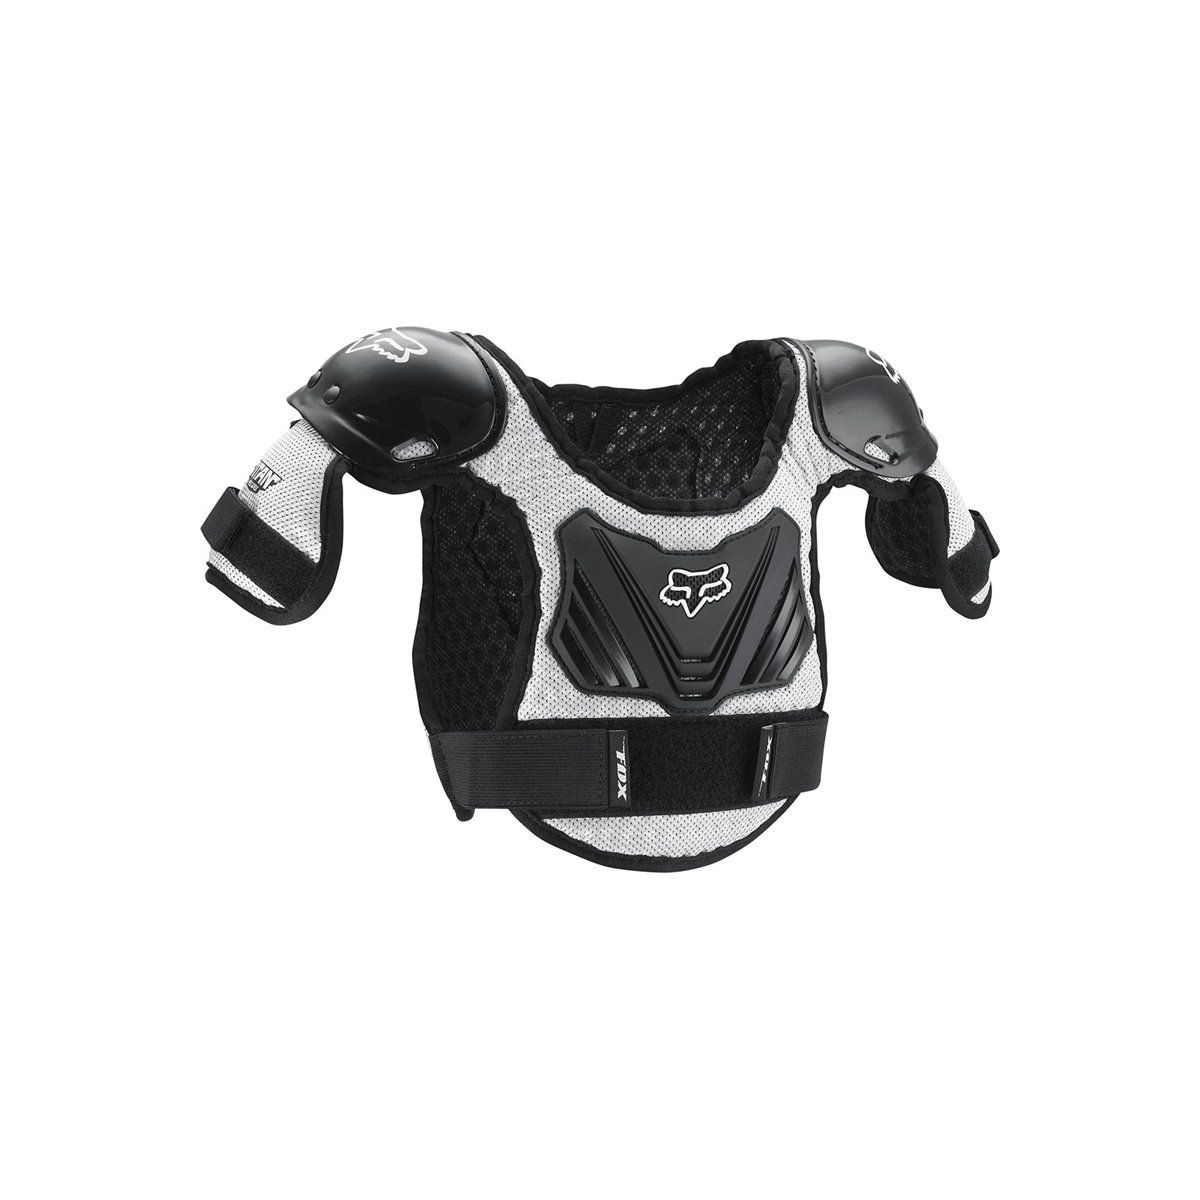 Peto de protección integral infantil Fox Titan Peewee para bicicleta niño para espalda y pecho 06053-464